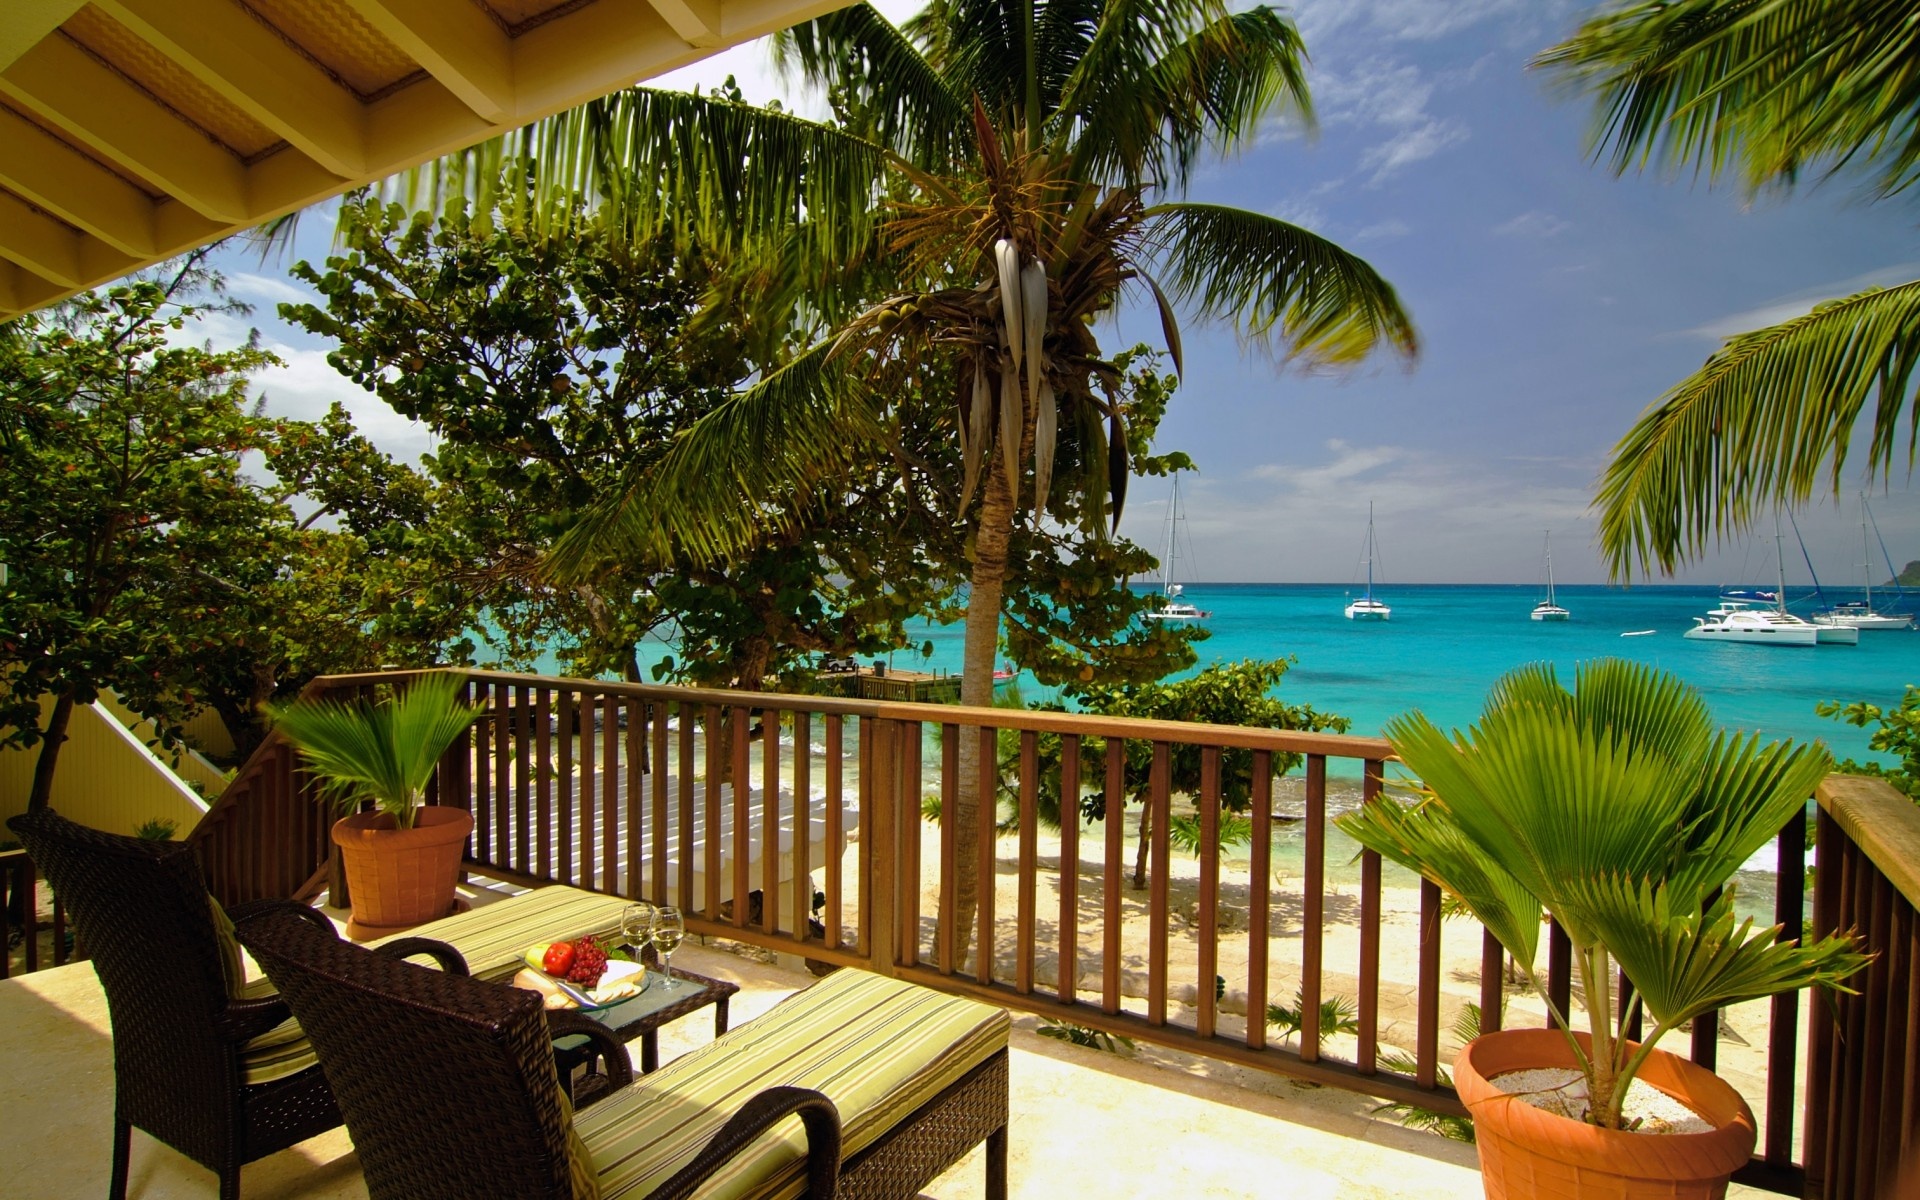 Ocean boats, Terrace balcony view, Sea beach, HD desktop and mobile backgrounds, 1920x1200 HD Desktop